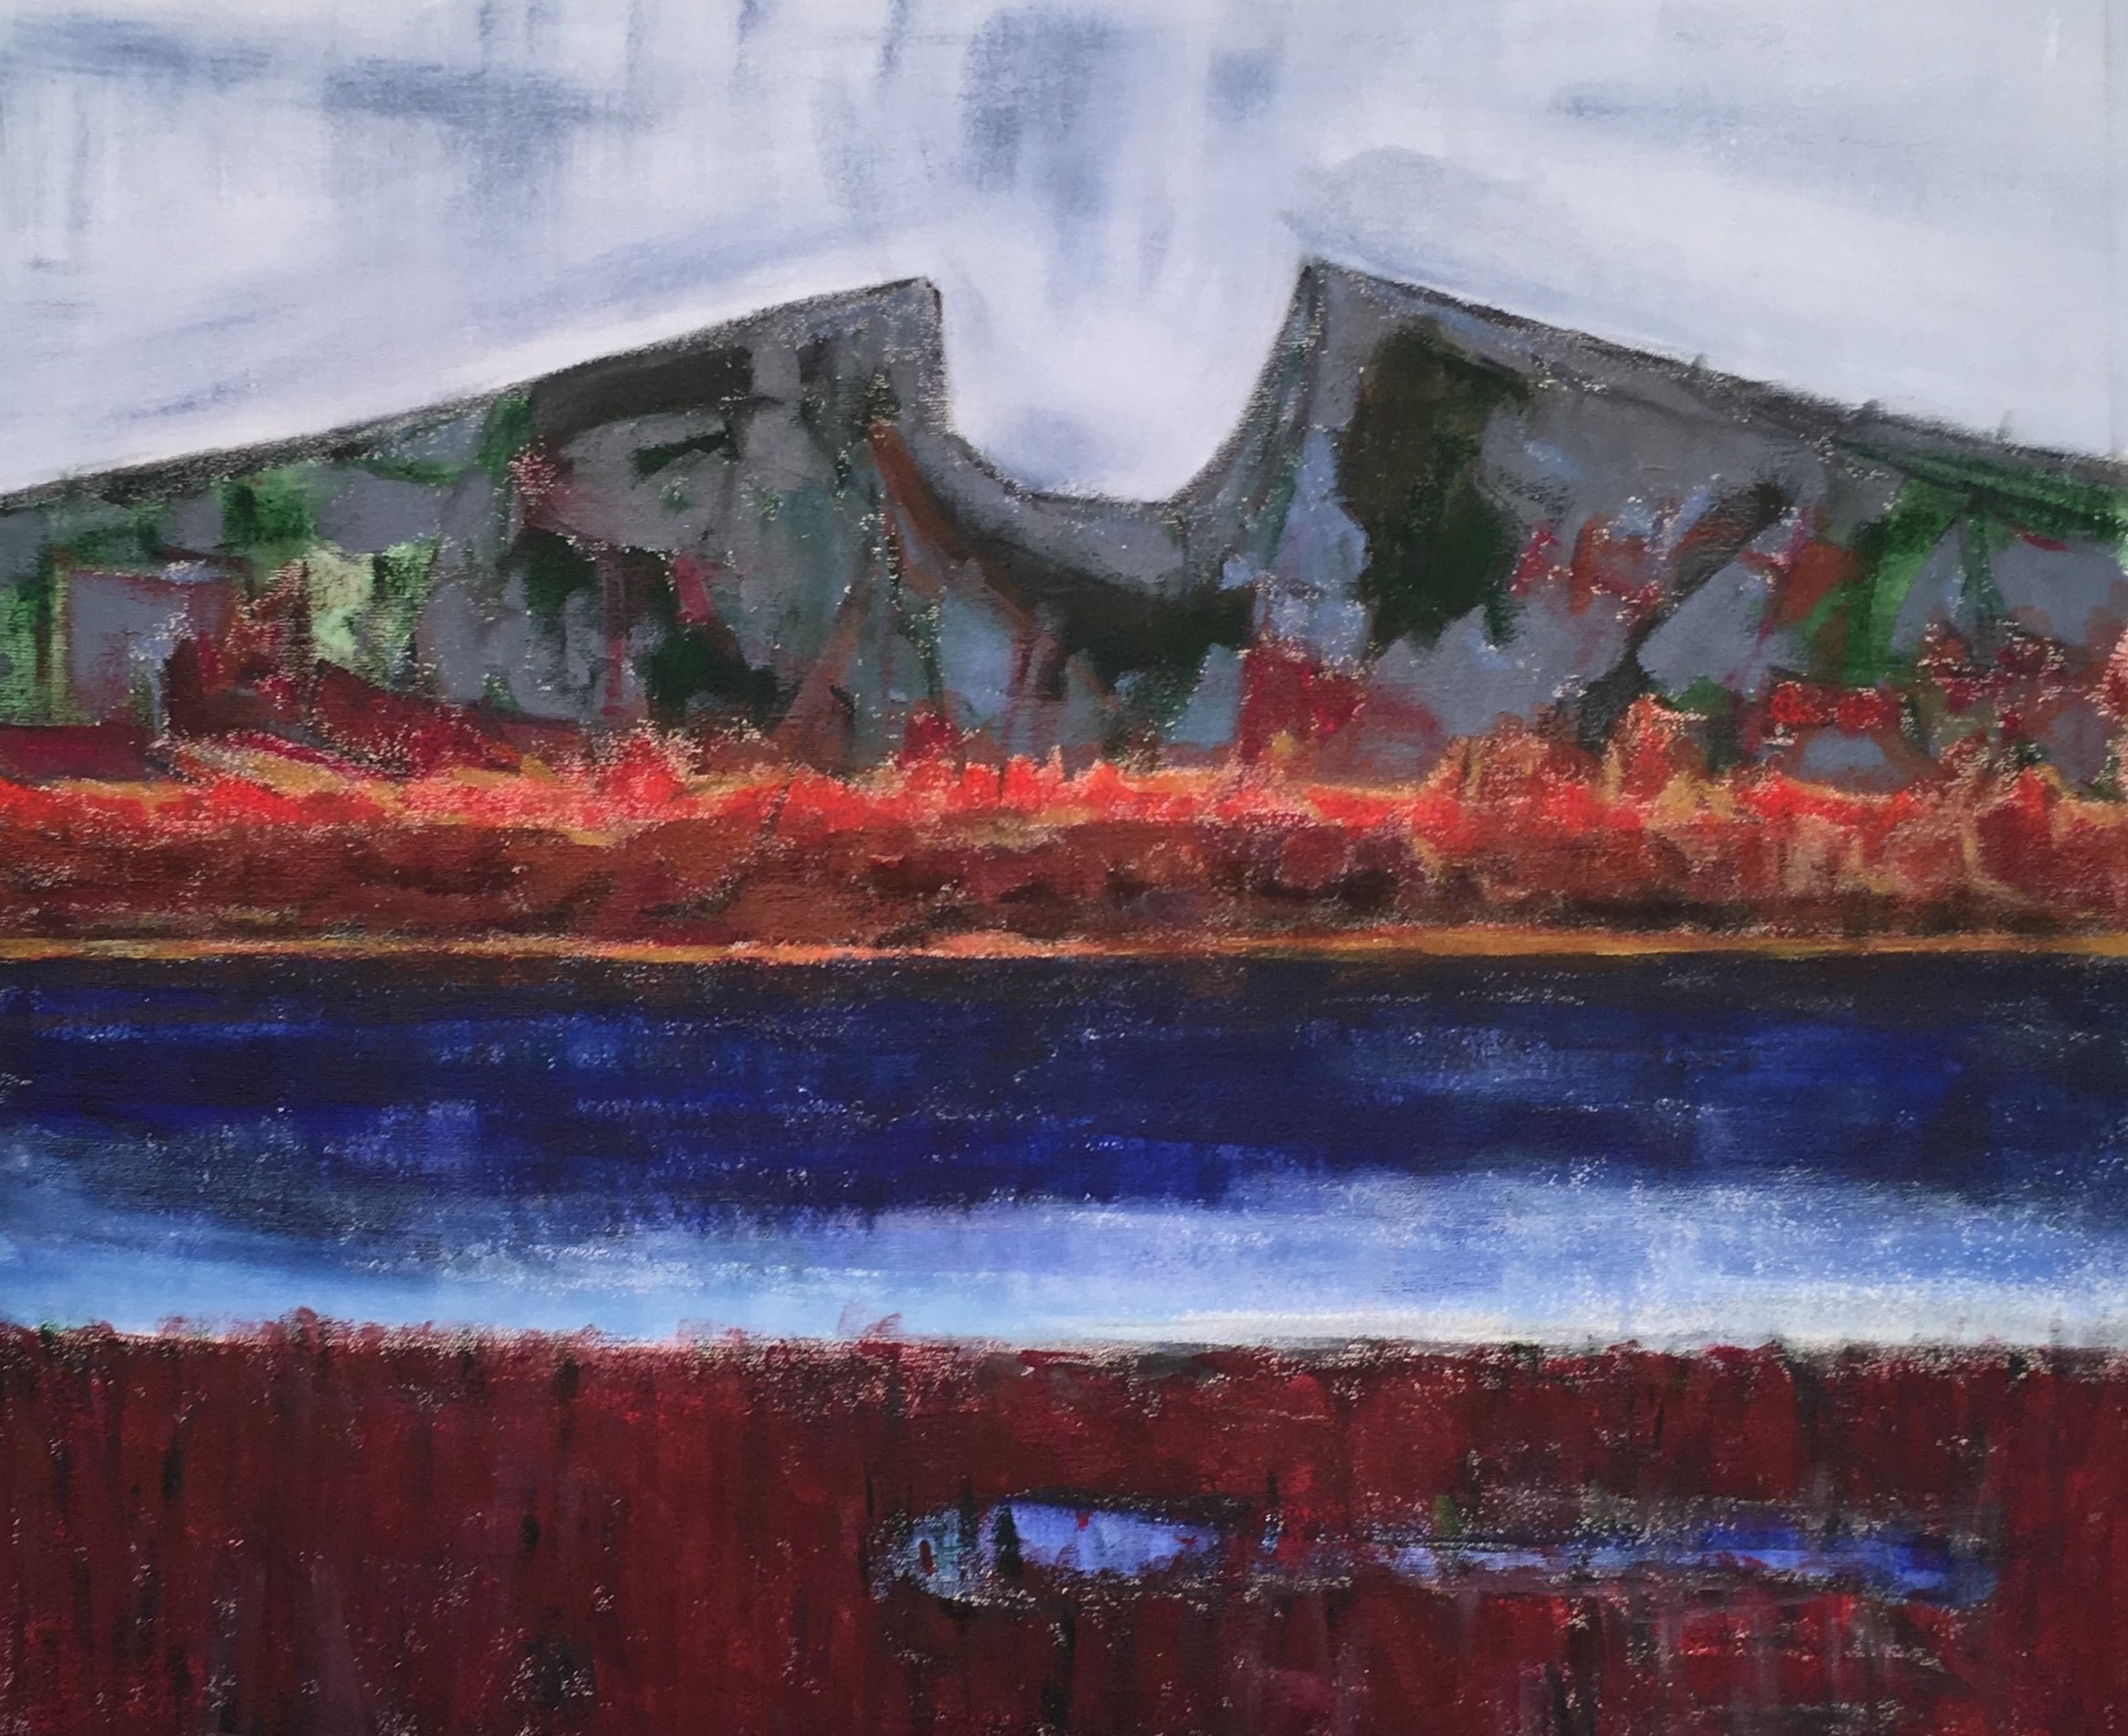 N° 5020 - Le Pic Saint-Loup vu des étangs - Acrylique sur toile - 54 x 65 cm - 15 juin 2019